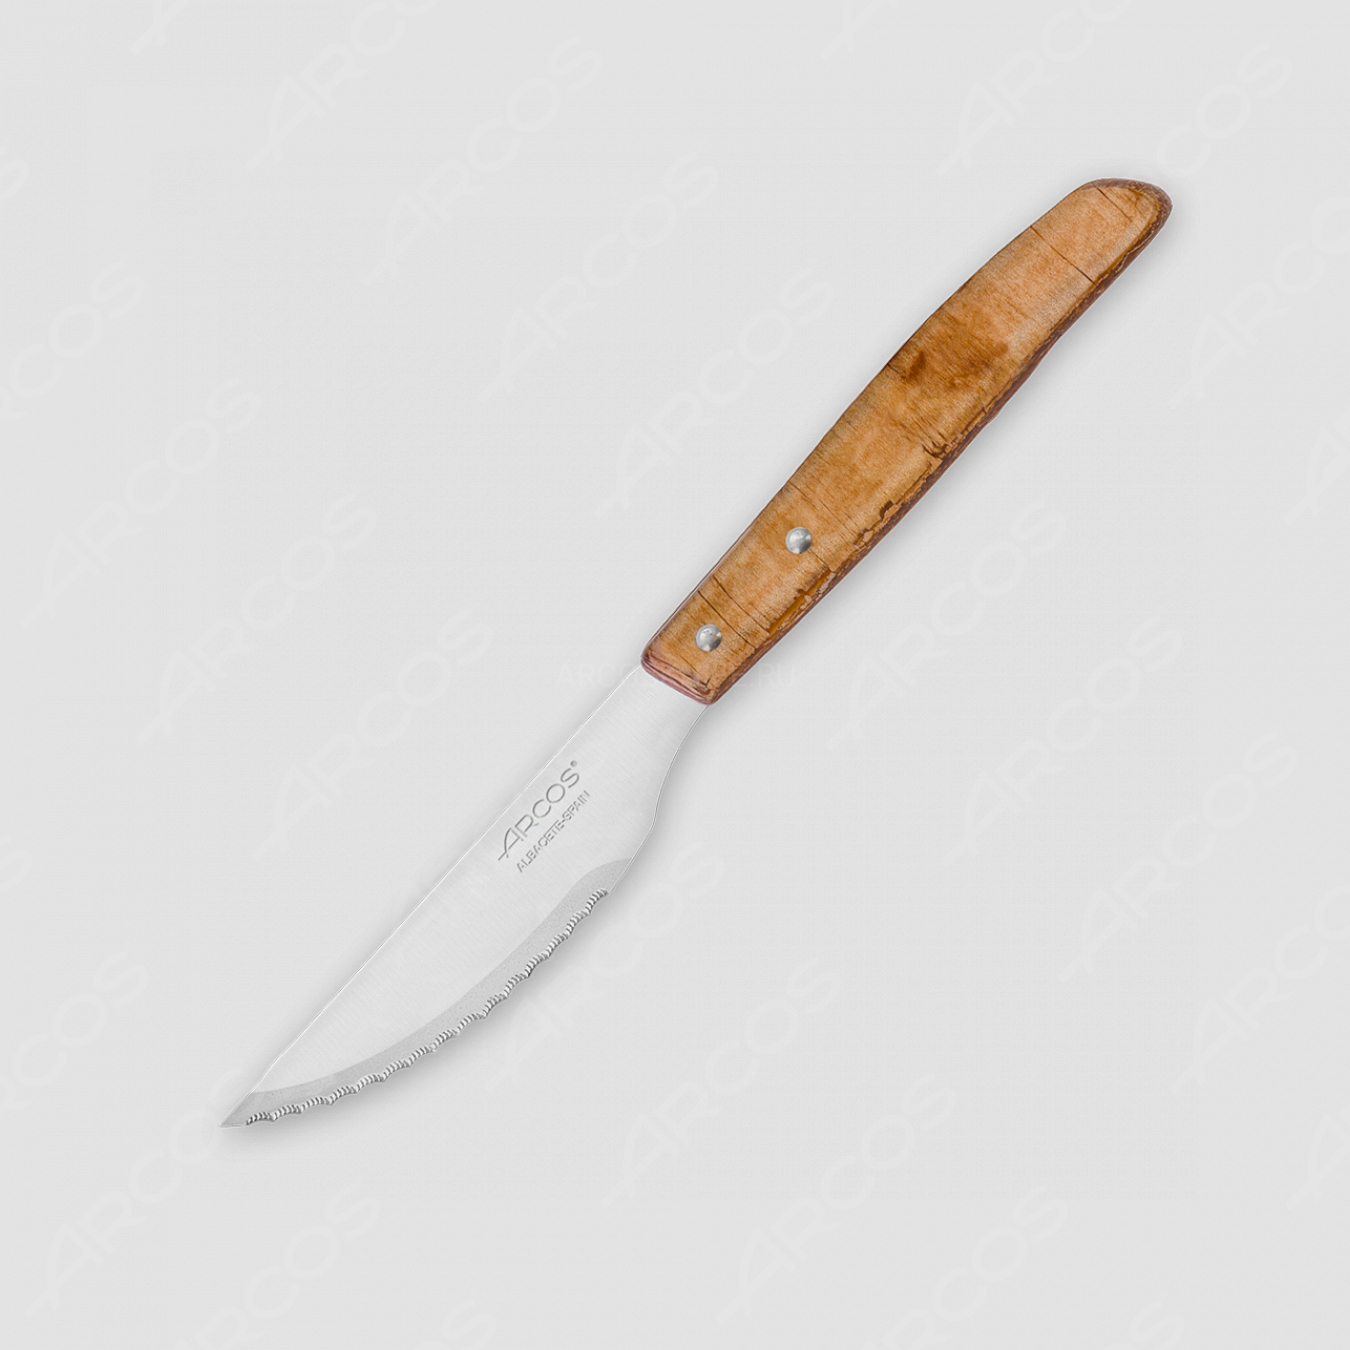 Нож для стейка 11 см, серия Mesa, ARCOS, Испания